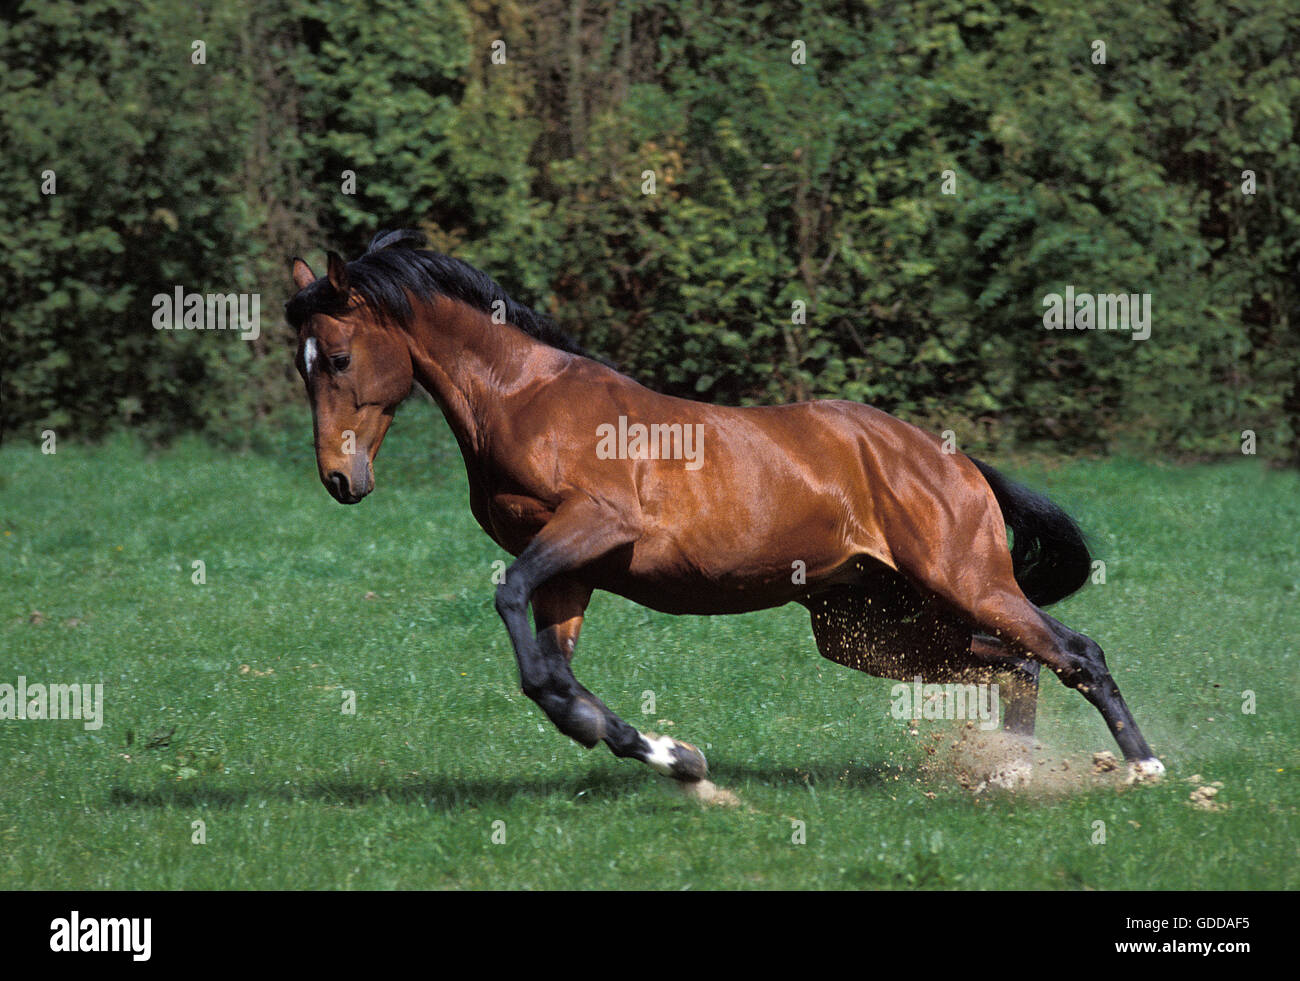 Selle francais horse immagini e fotografie stock ad alta risoluzione - Alamy